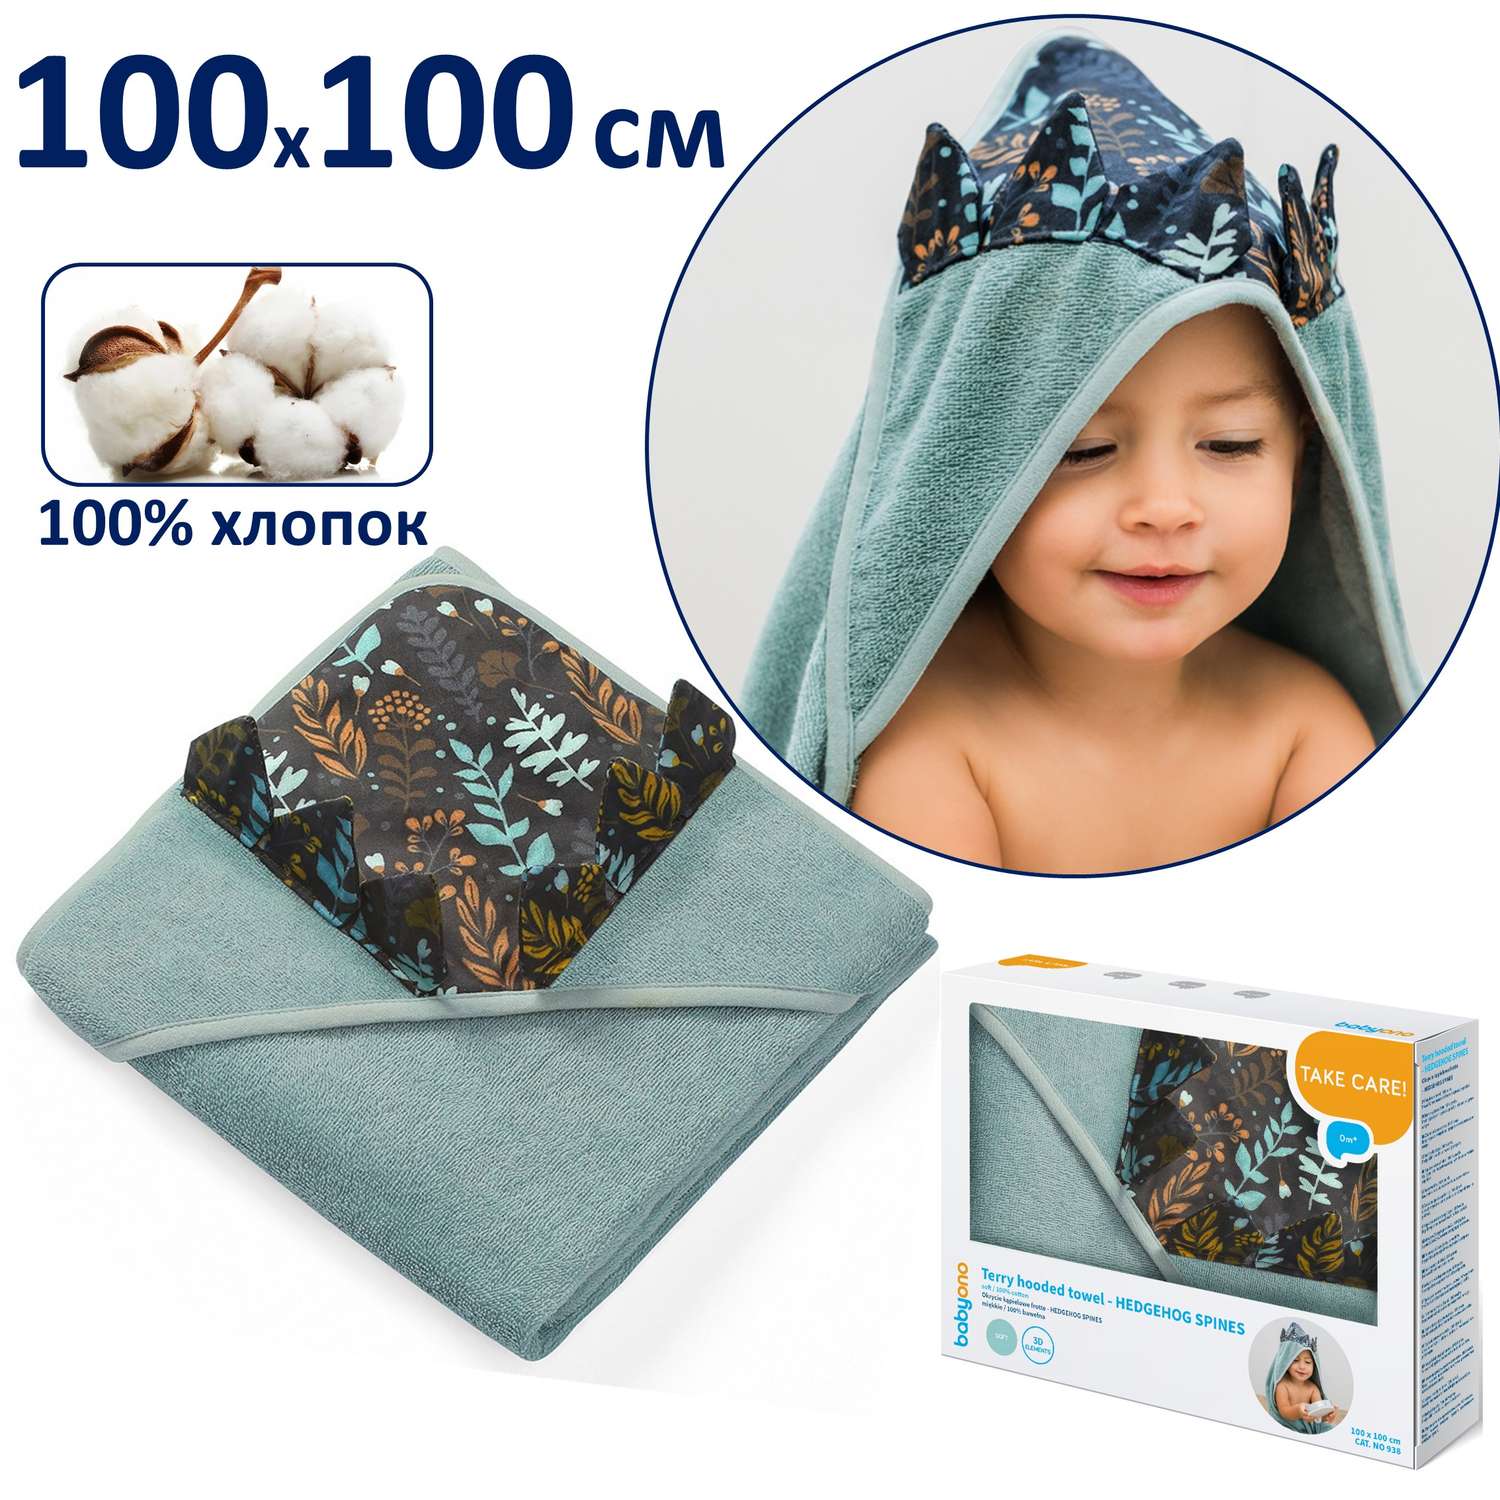 Полотенце Babyono детское махровое с капюшоном Hedgehog Spines 100x100 см - фото 1